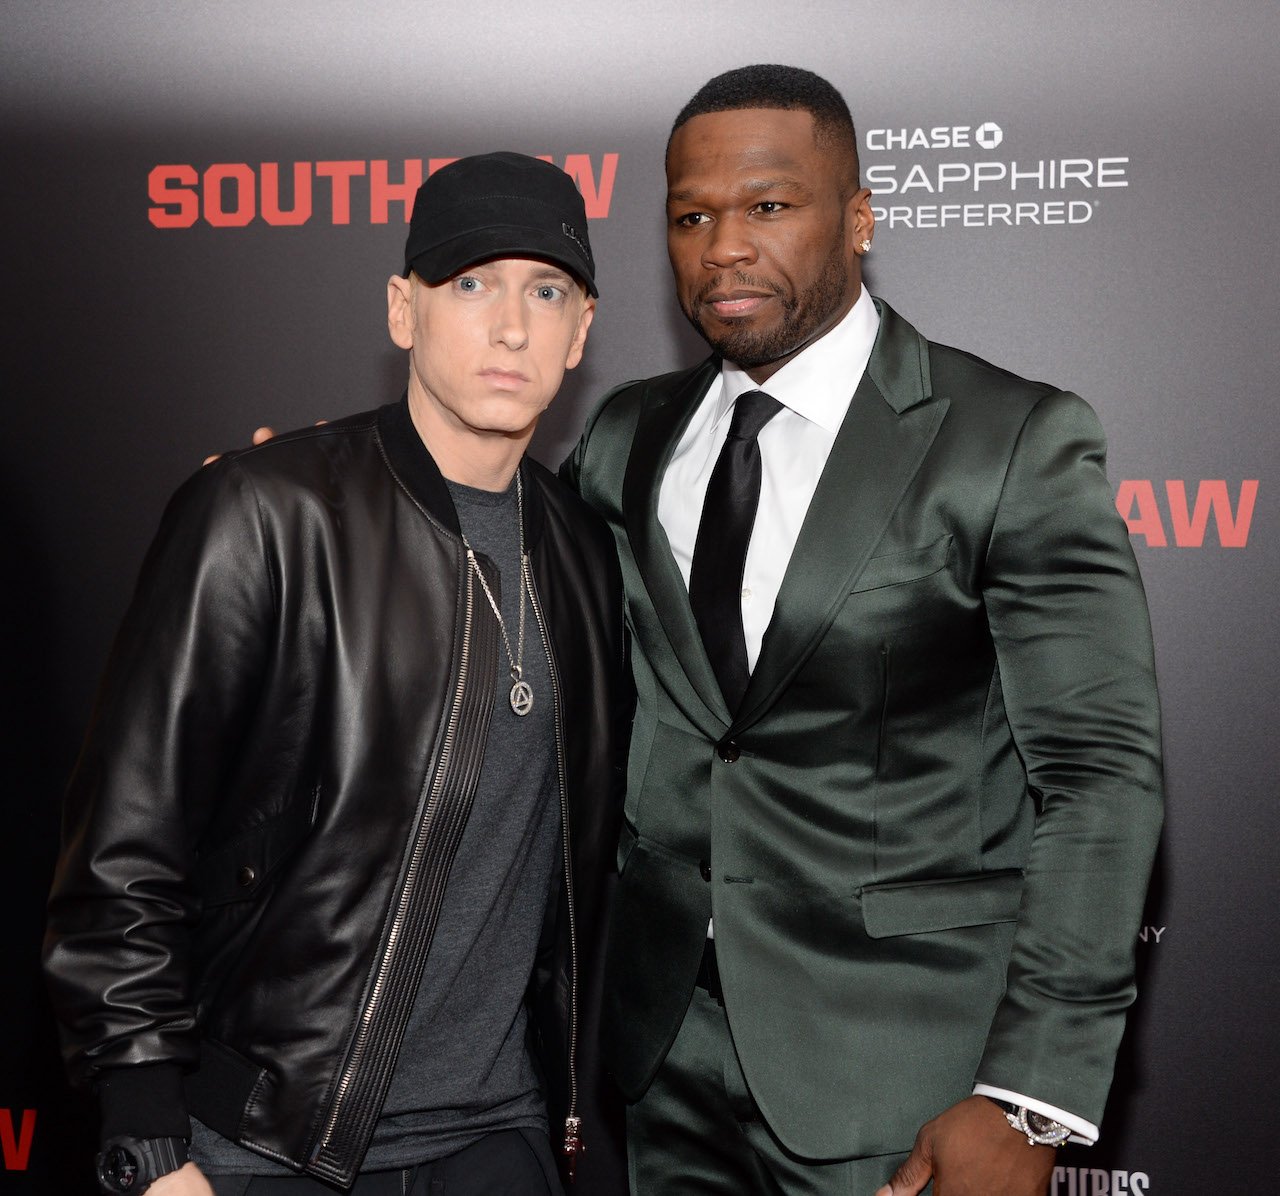 Eminem and 50 Cent pose on red carpet together